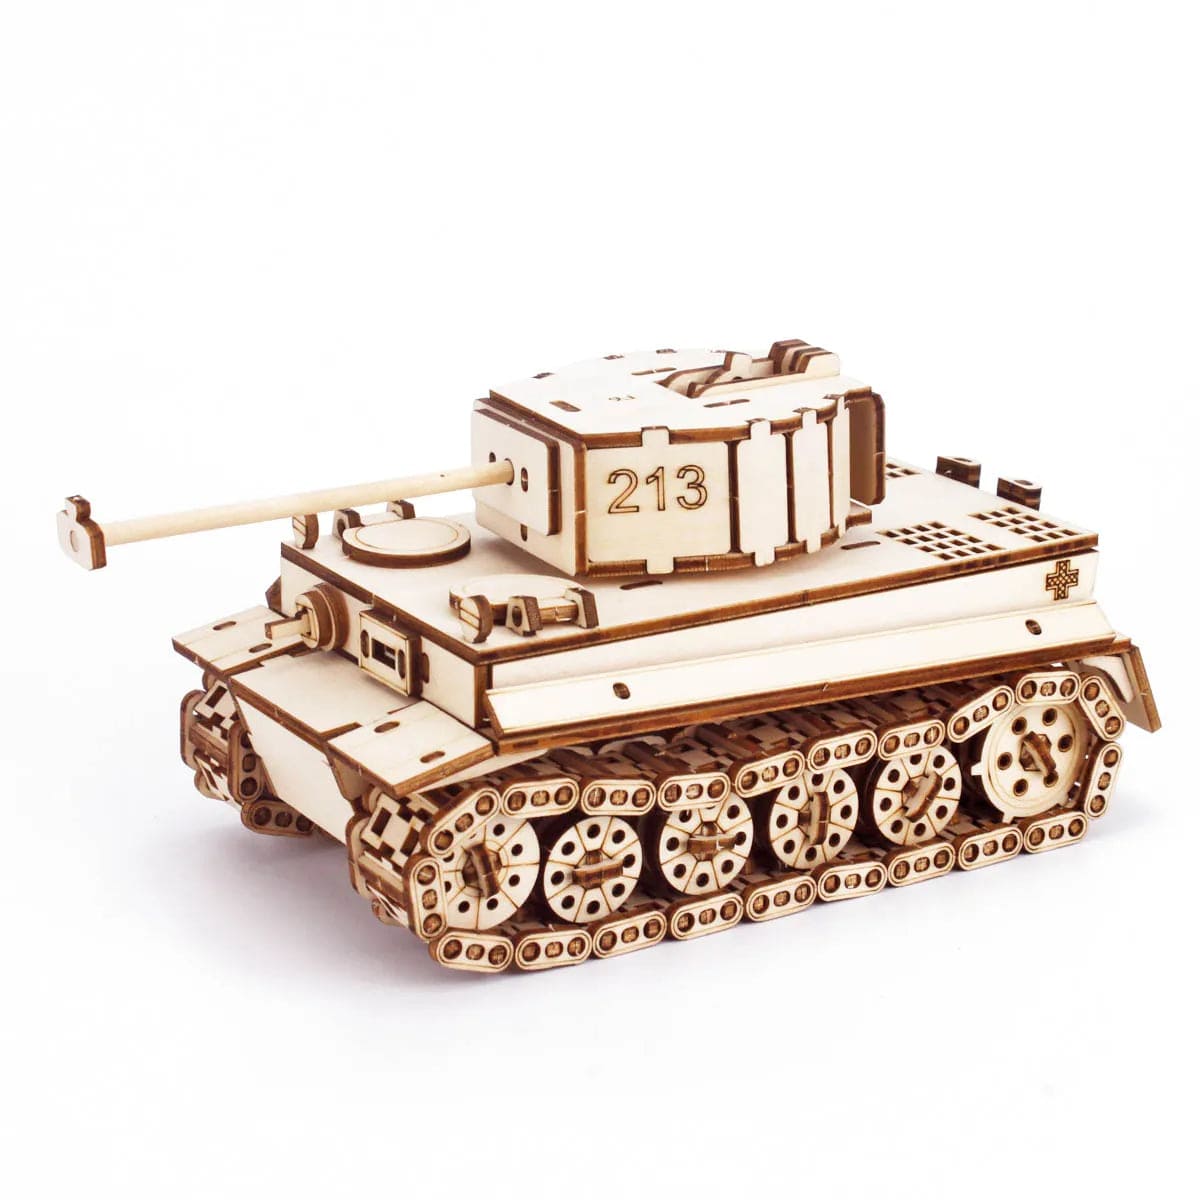 Puzzle 3d Tank | Tiger